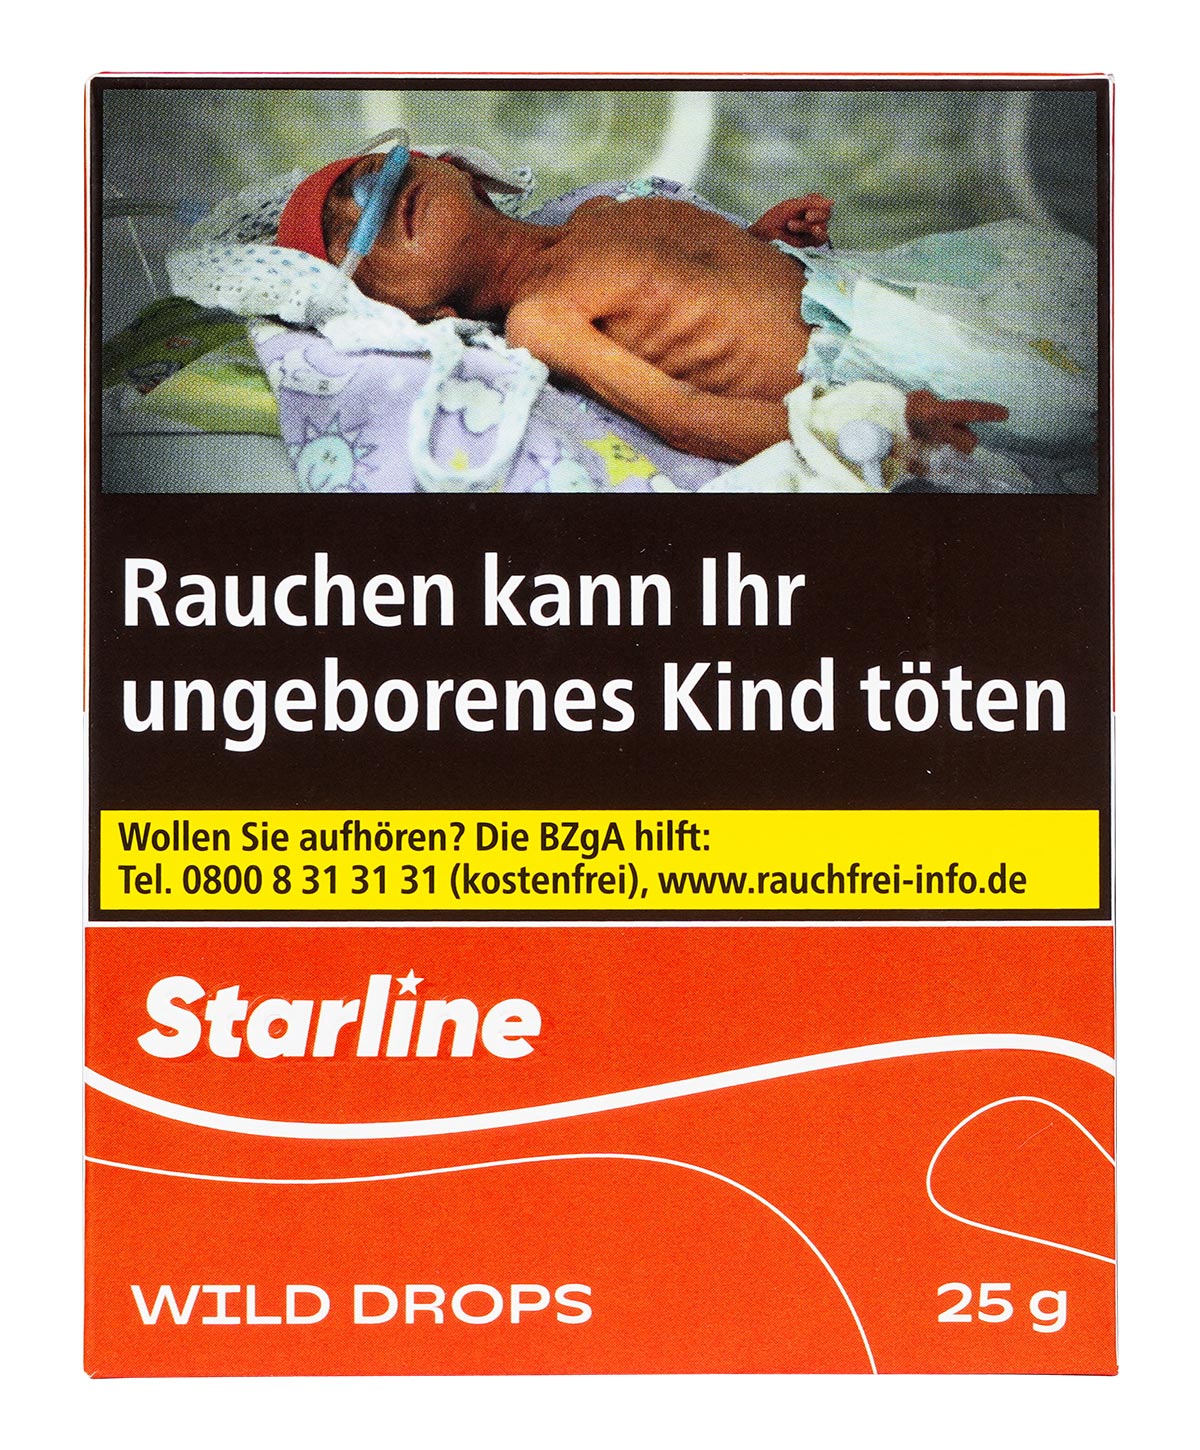 Starline Wild Drops 25g